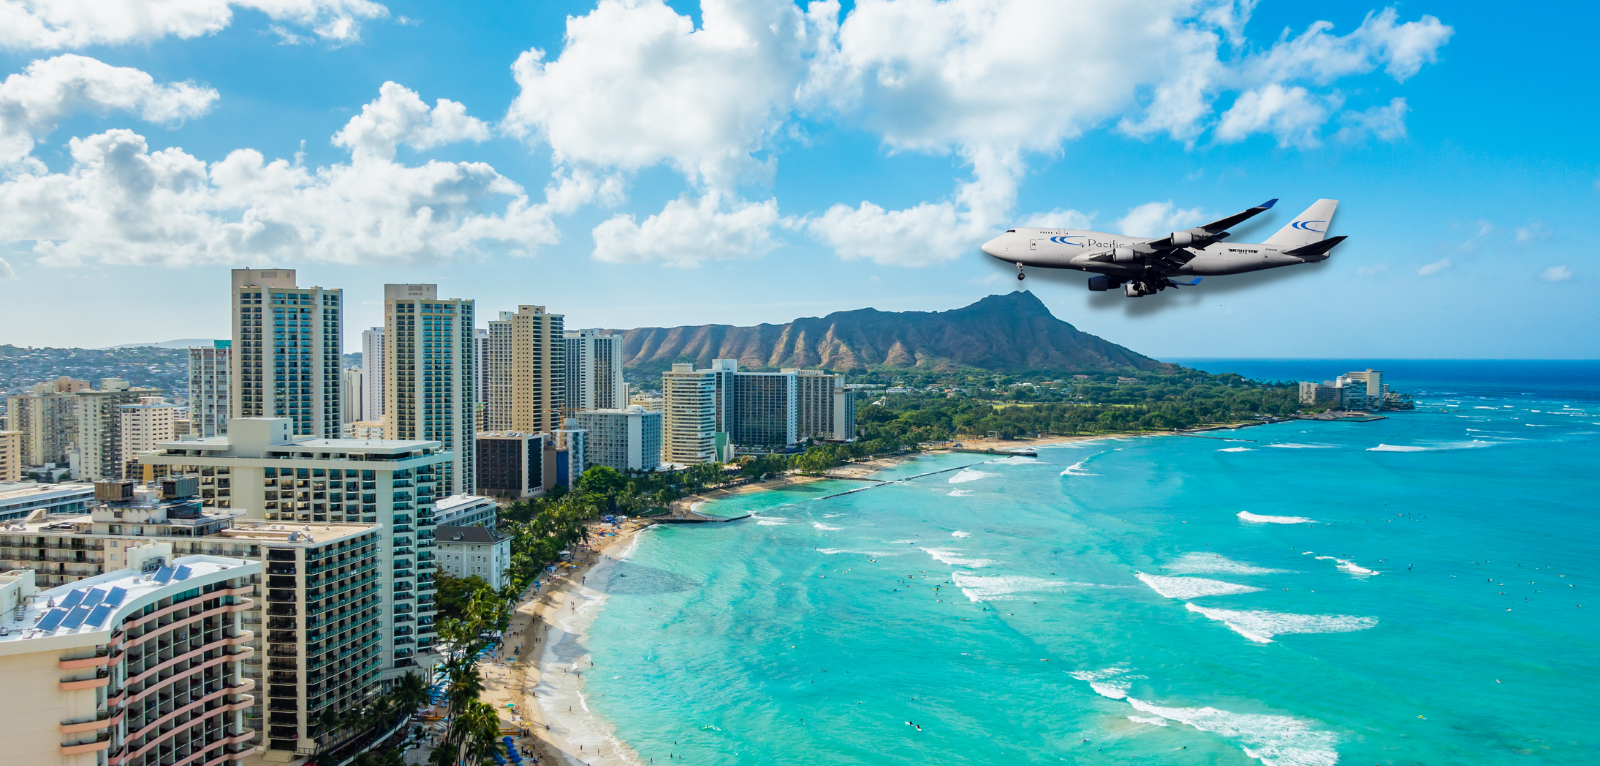 PAC Plane Flying Into Honolulu